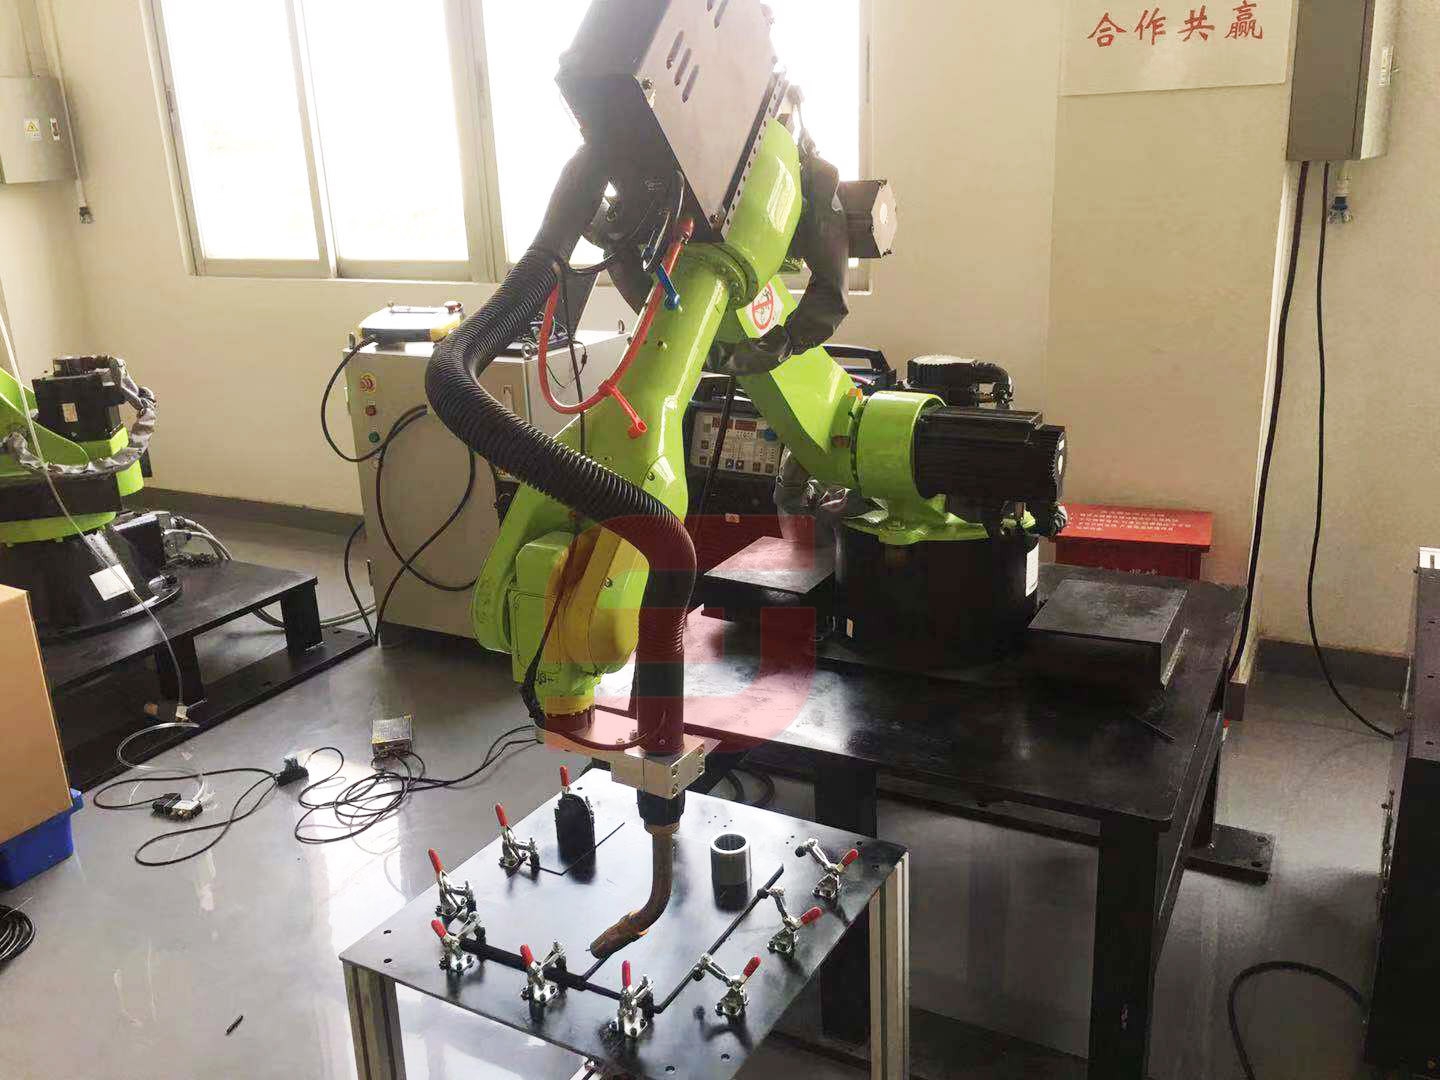 SJ-HH1450-6 Six-axis welding robot